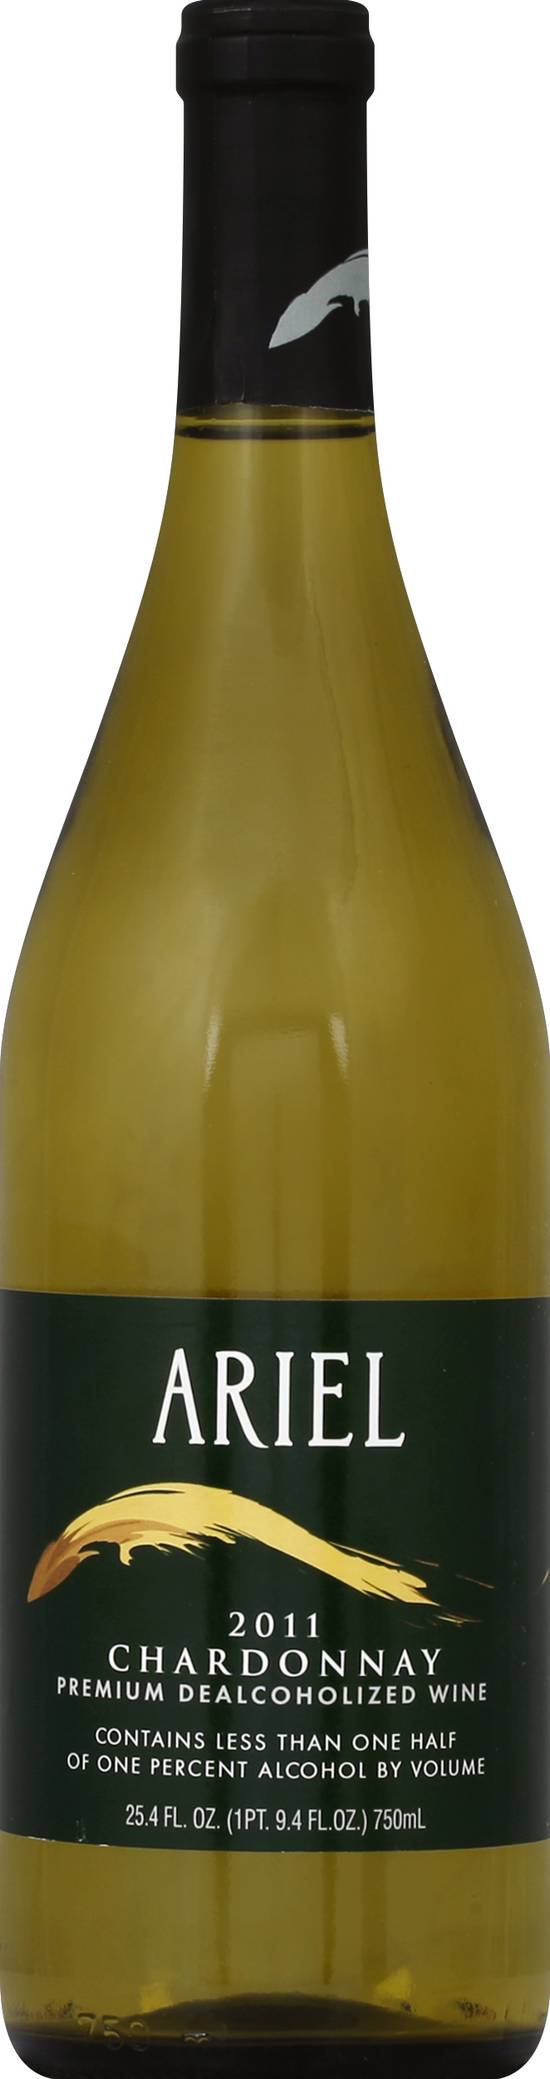 Ariel Chardonnay Dealcoholized Wine (750 ml)